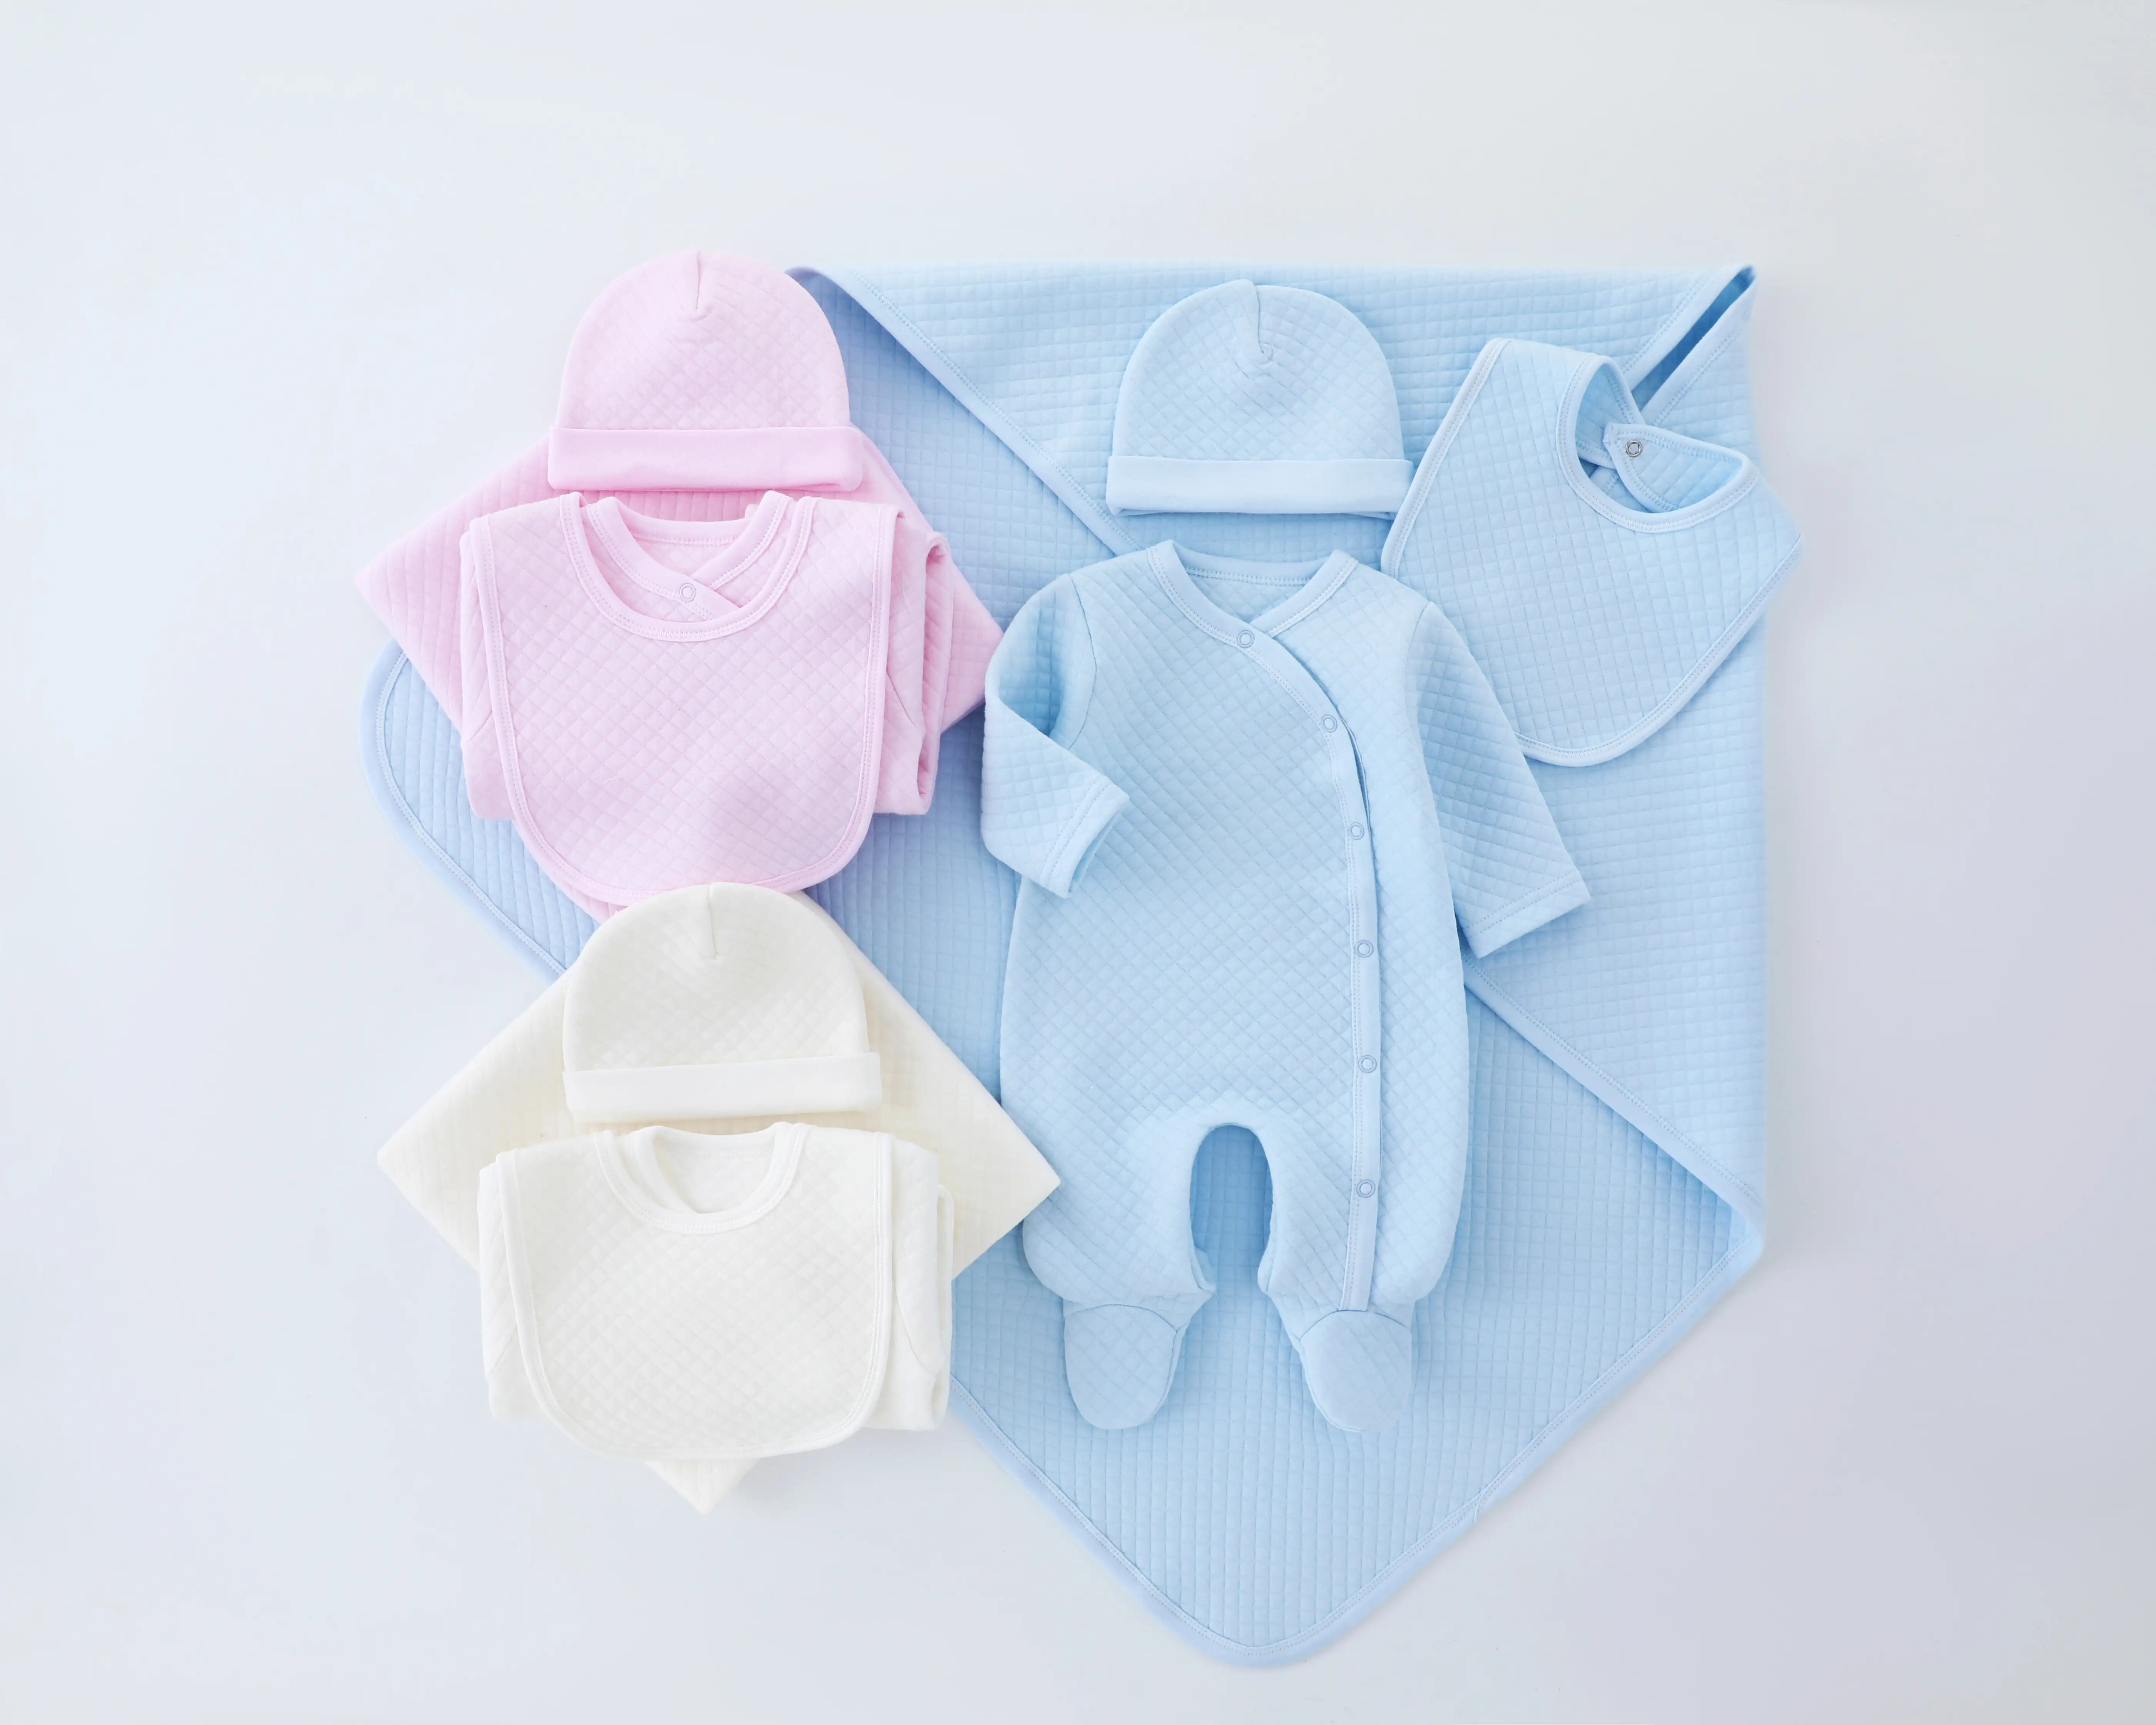 かわいい品質の綿100% ユニセックスベビー服セット新生児ギフトセットには、ロンパース、毛布、よだれかけ、帽子が含まれています